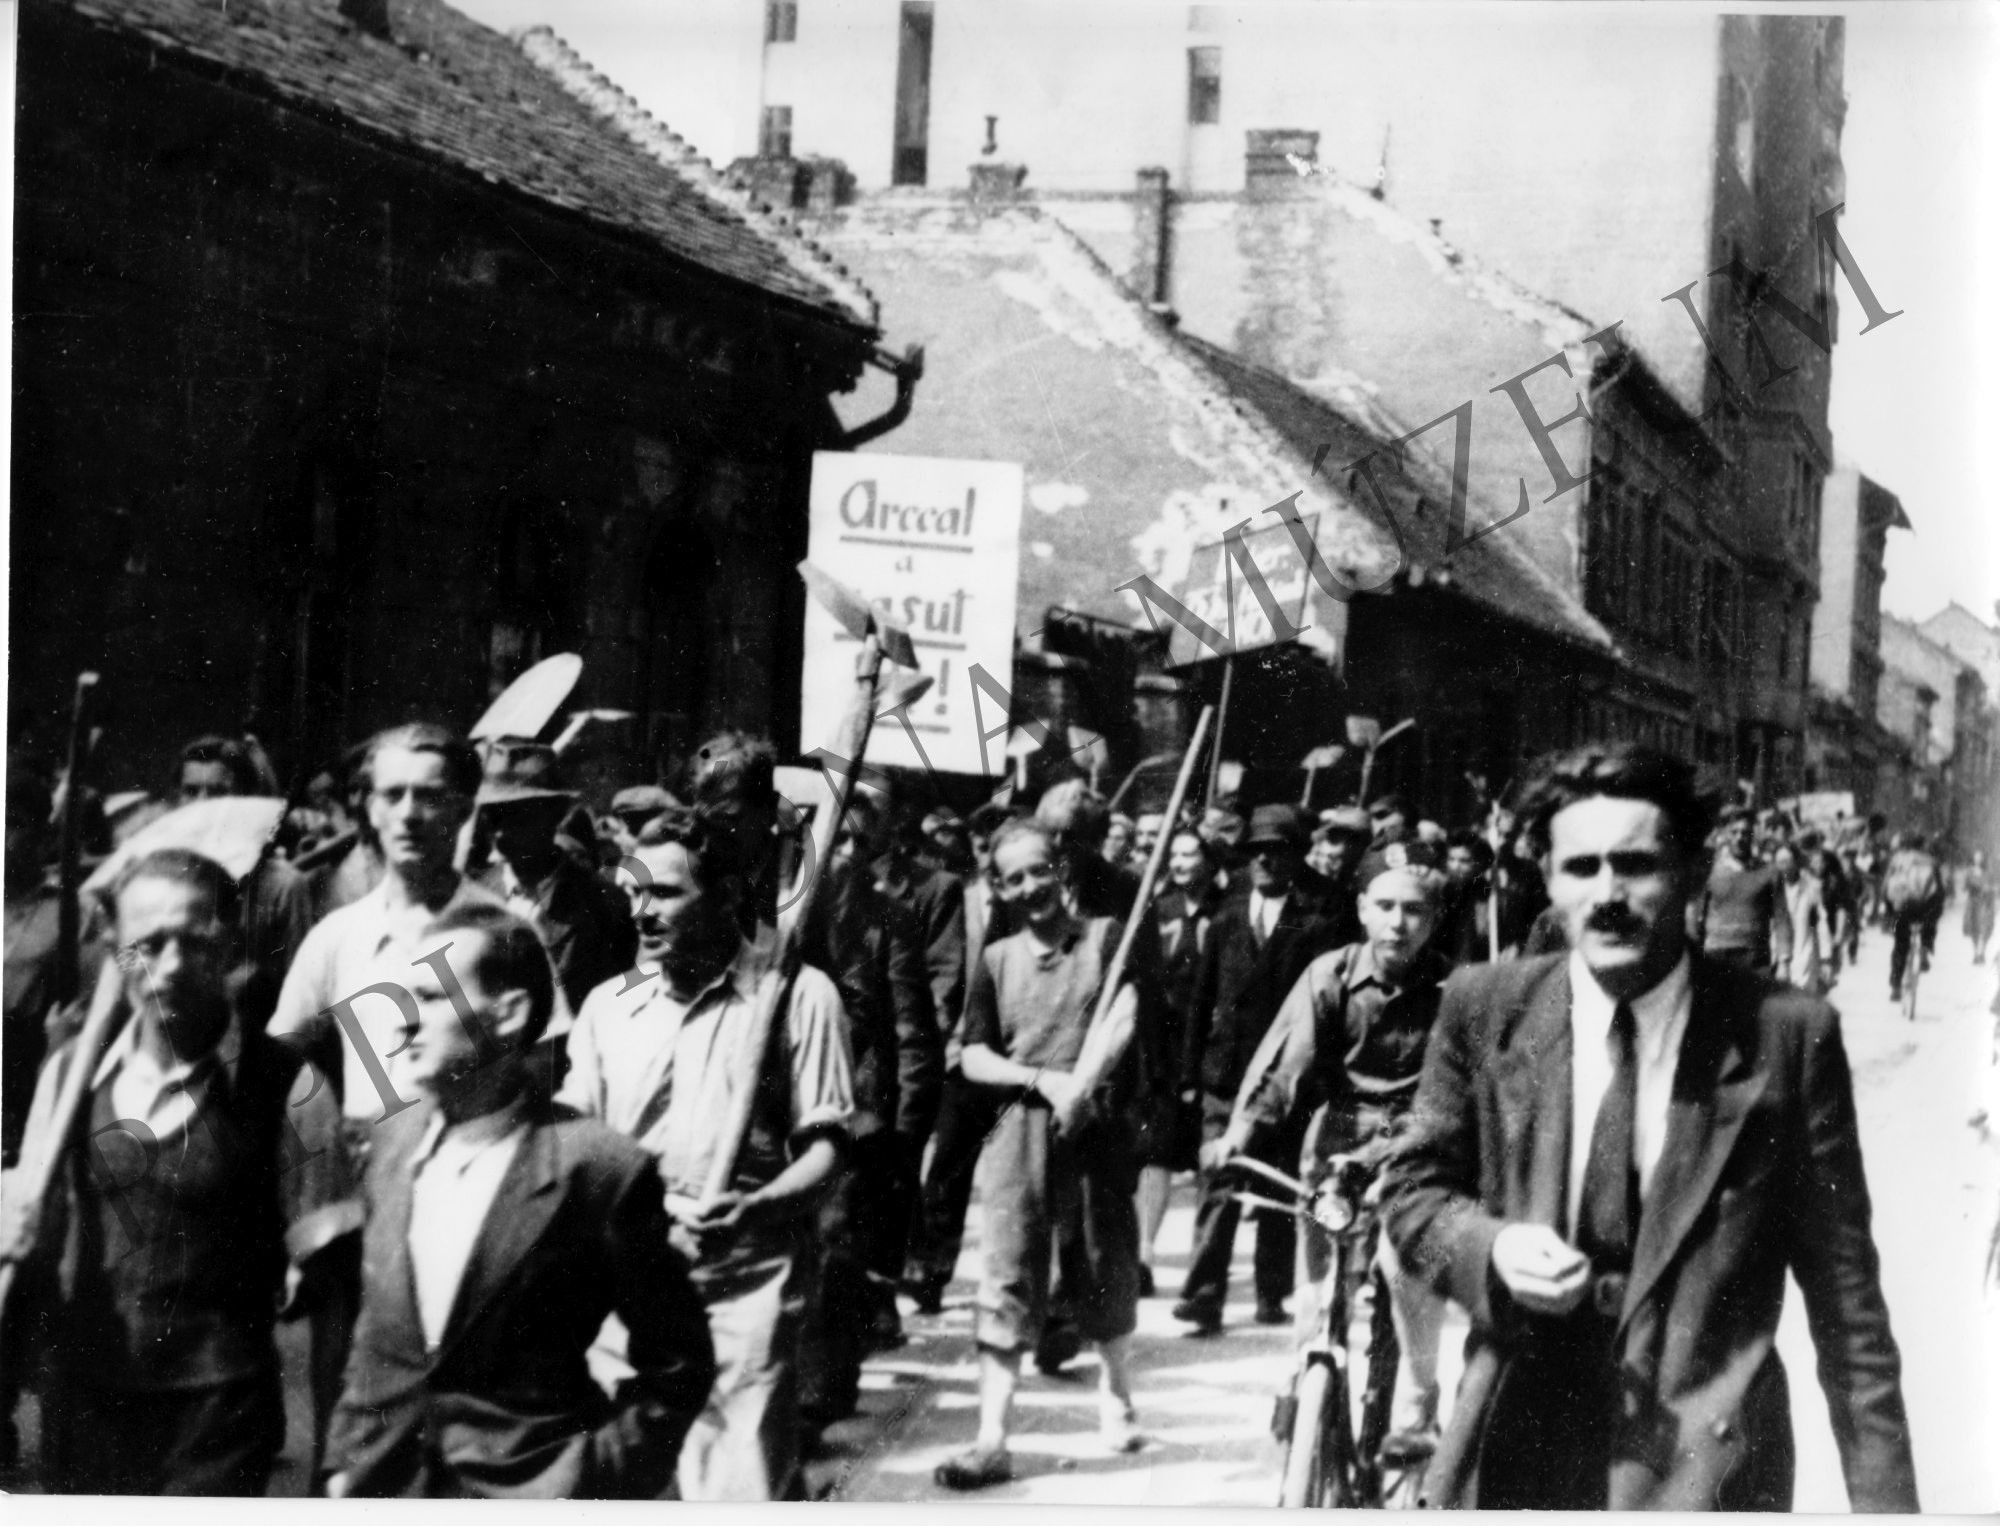 Vasútépítő munkára indulnak a IX. ker.-i pártszervezet toborozta önkéntesek. 1945.. (Rippl-Rónai Múzeum CC BY-NC-SA)